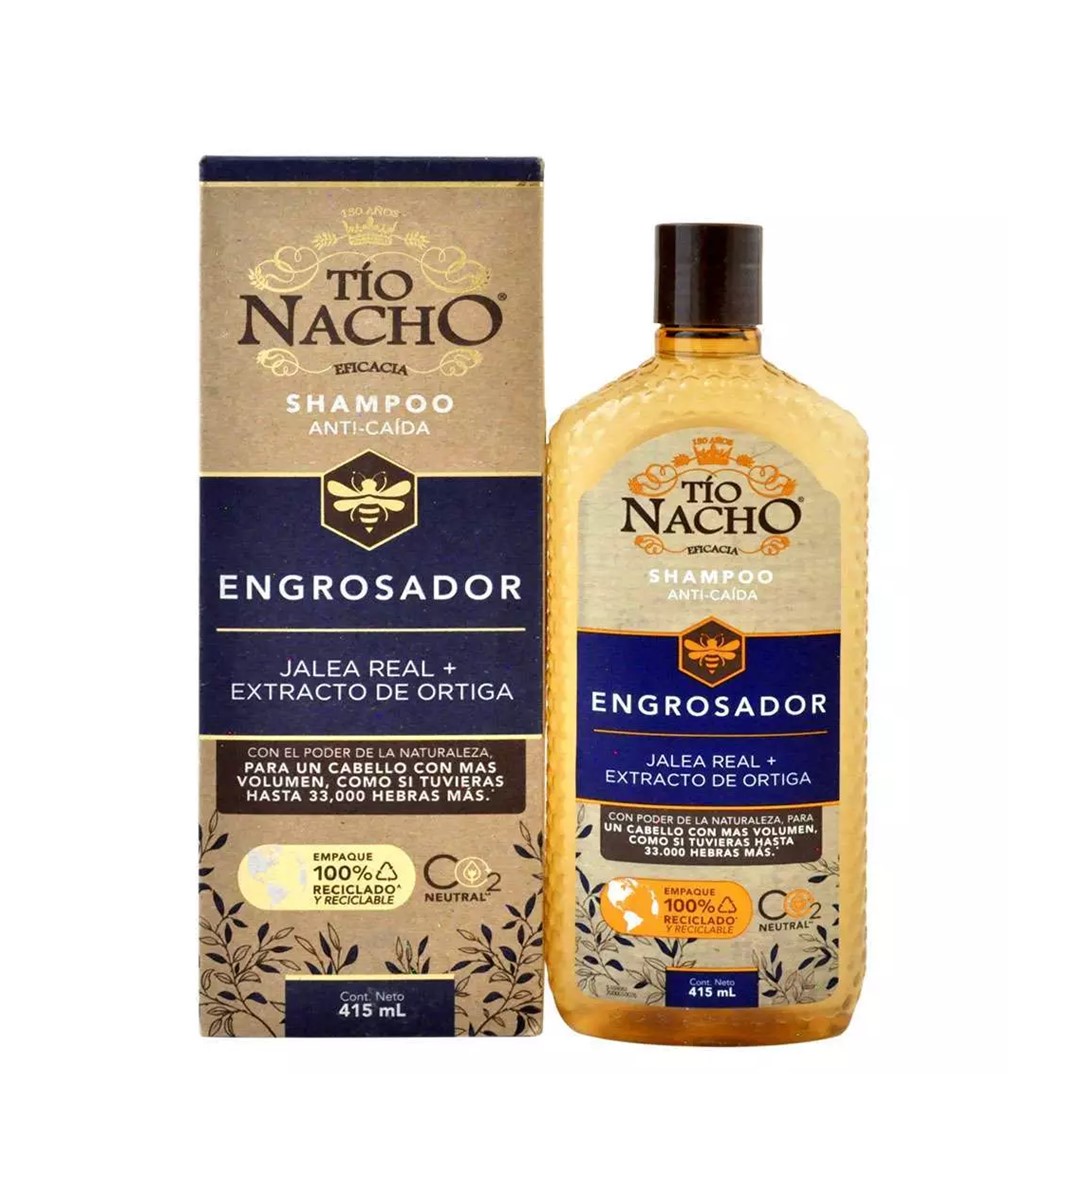 Tio Nacho Shampoo Engrosador x 415 ml